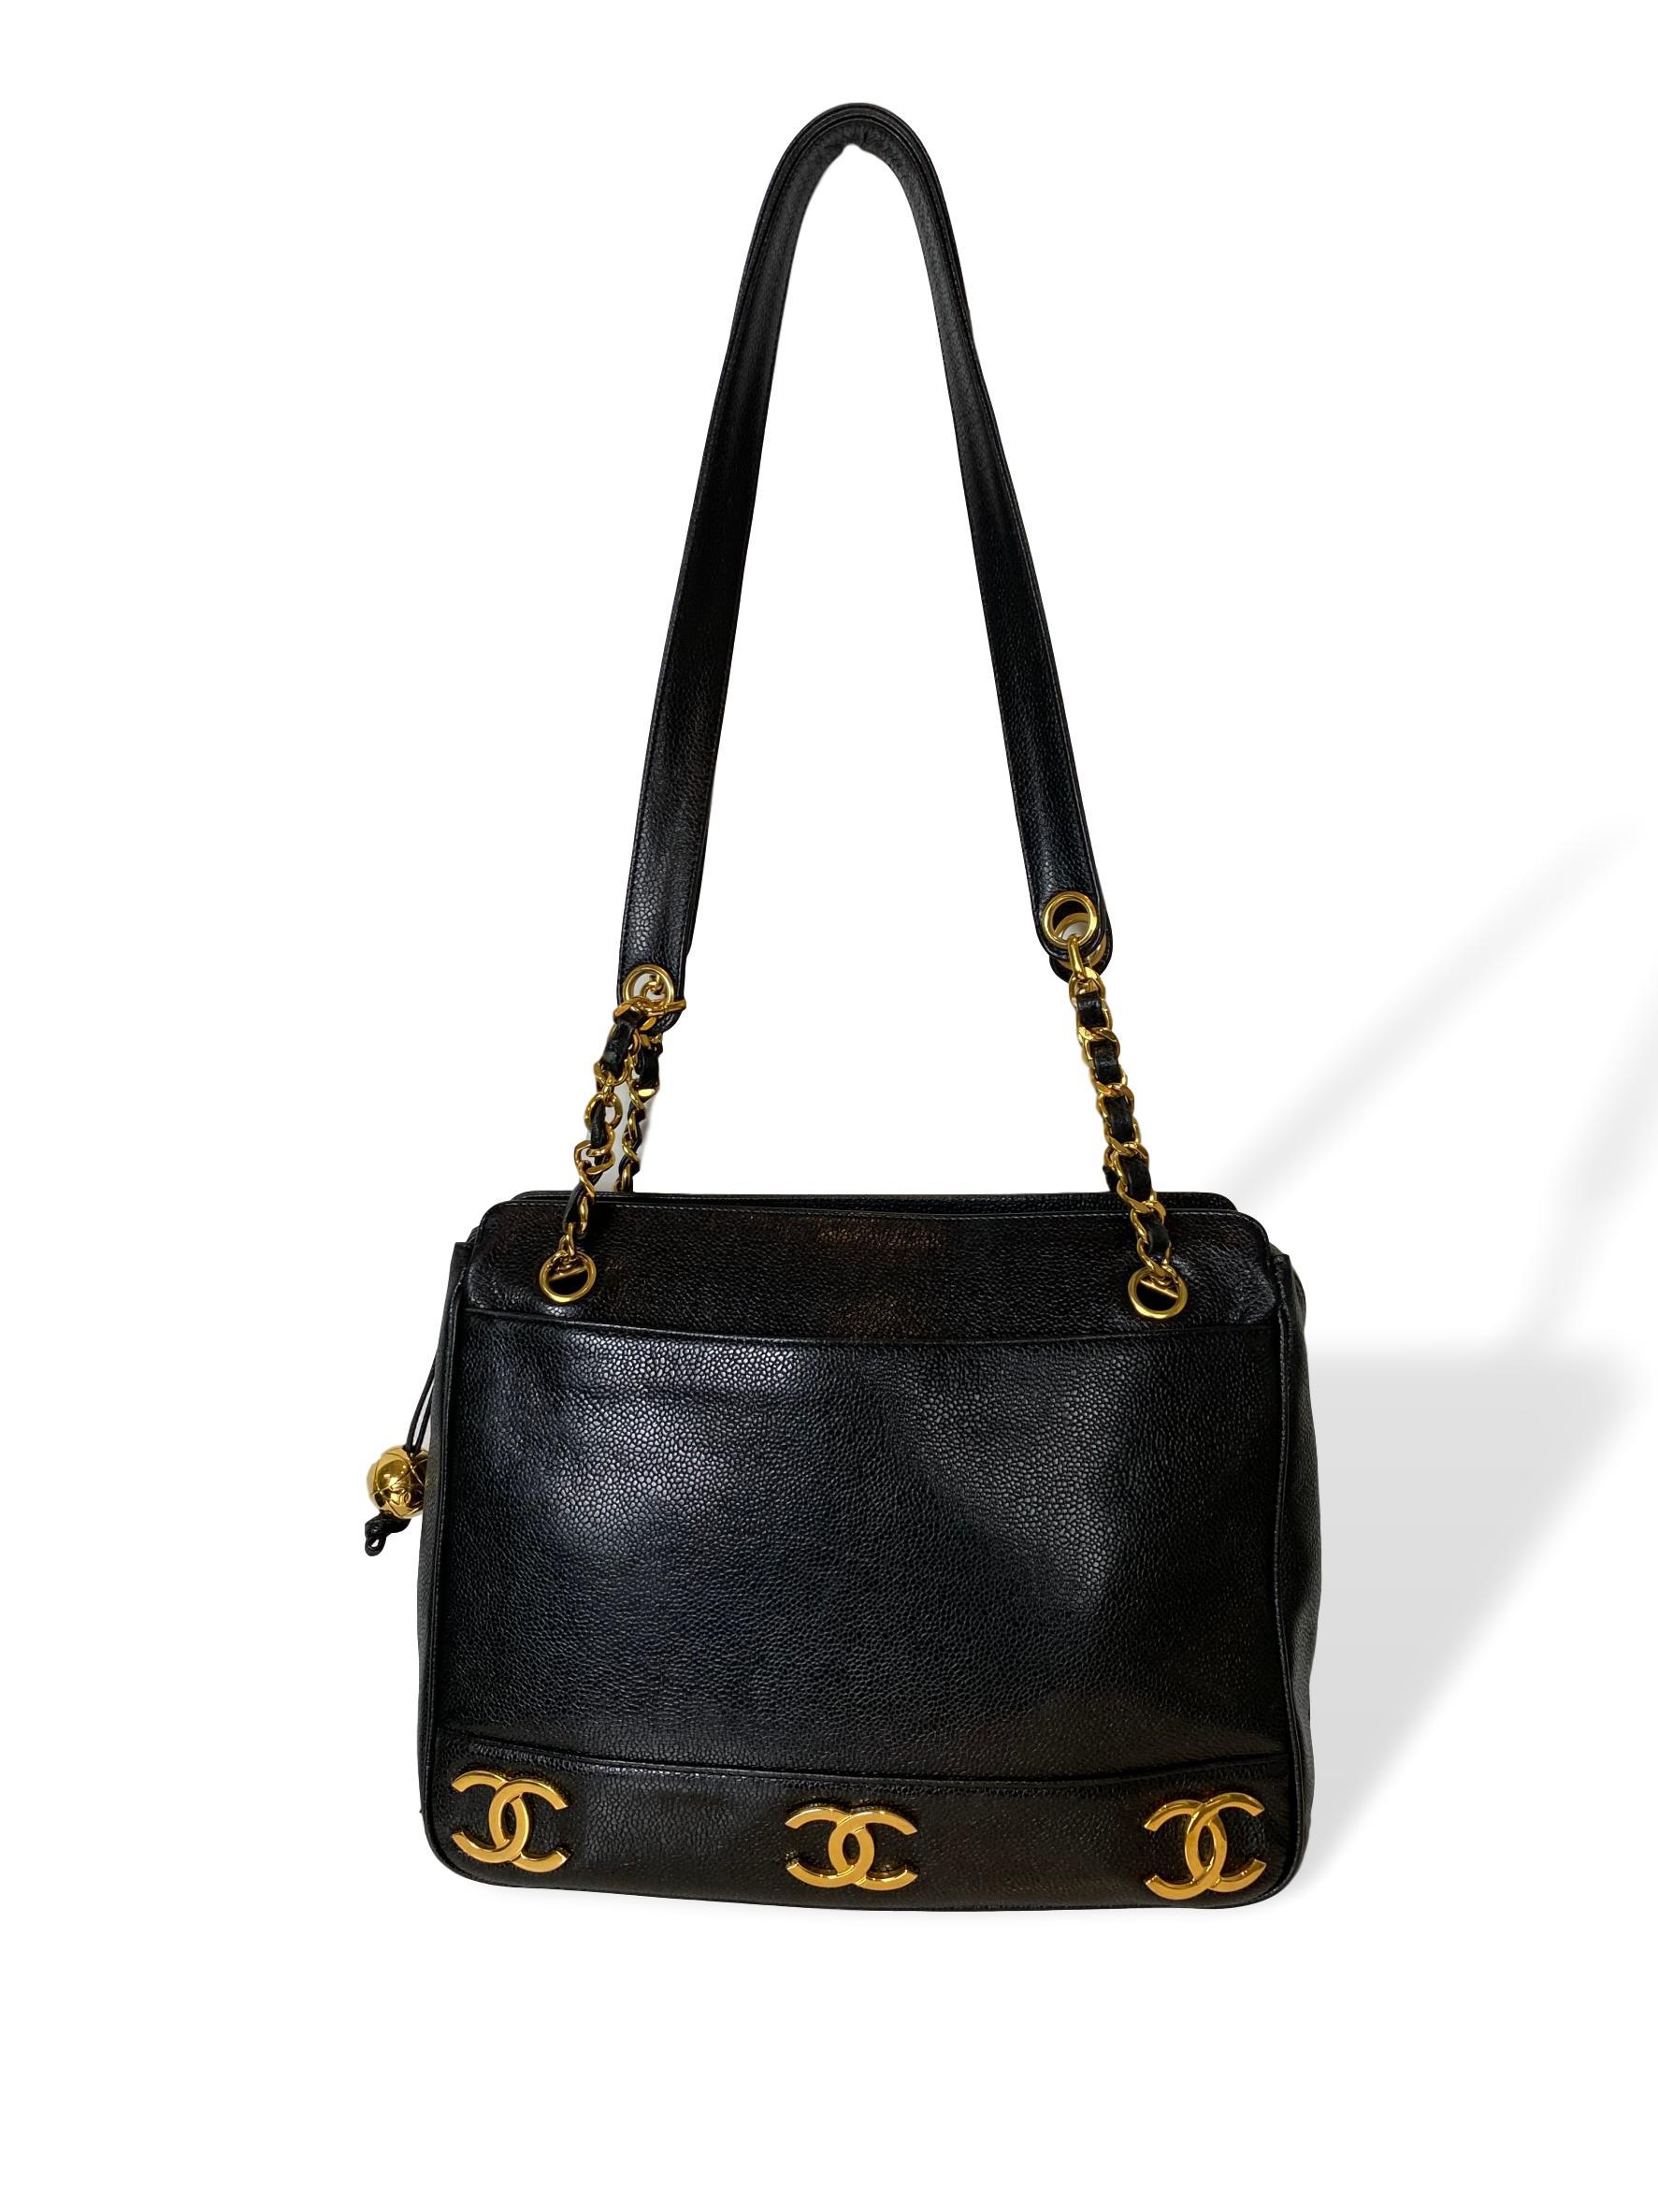 Iconic Chanel Vintage Black Caviar Leather Triple Logo Shoulder Bag, 1994 5